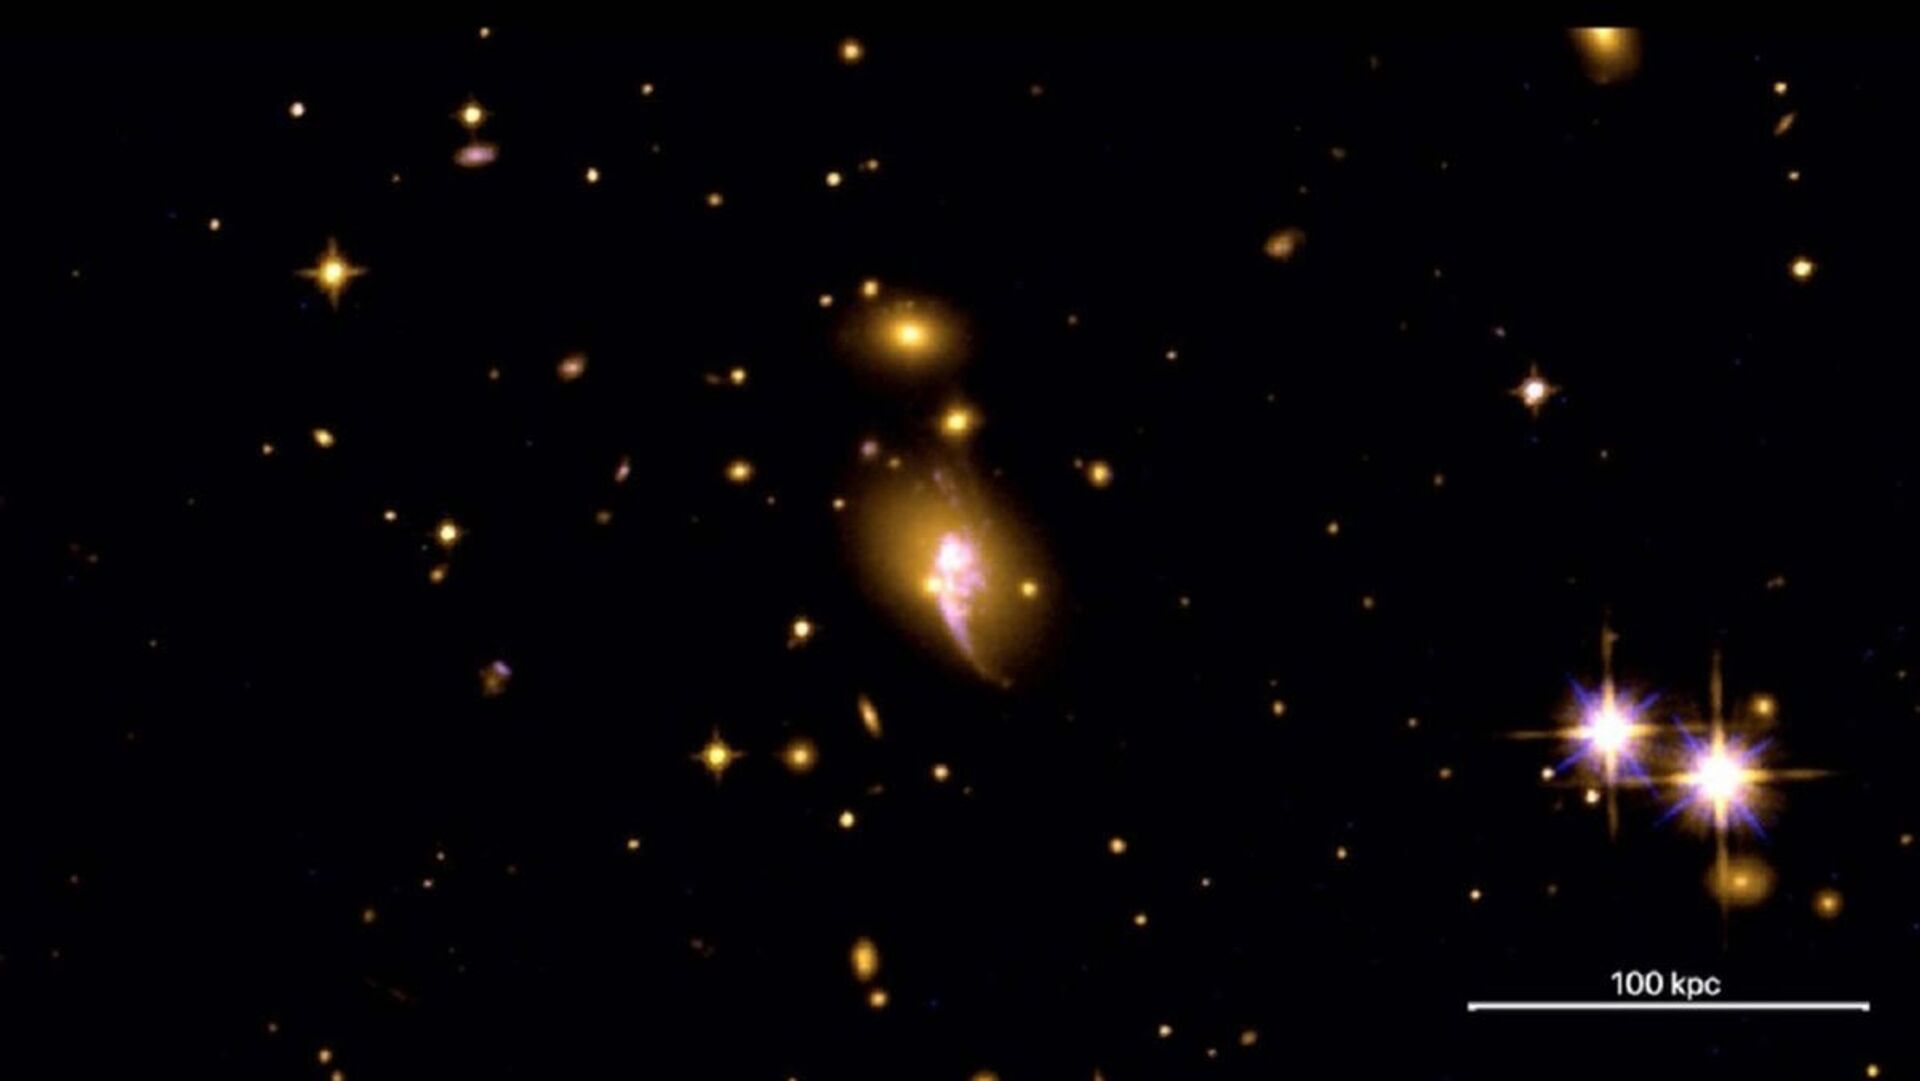 Novos aglomerados 'ocultos' de galáxias são descobertos (FOTO) - Sputnik Brasil, 1920, 30.03.2021